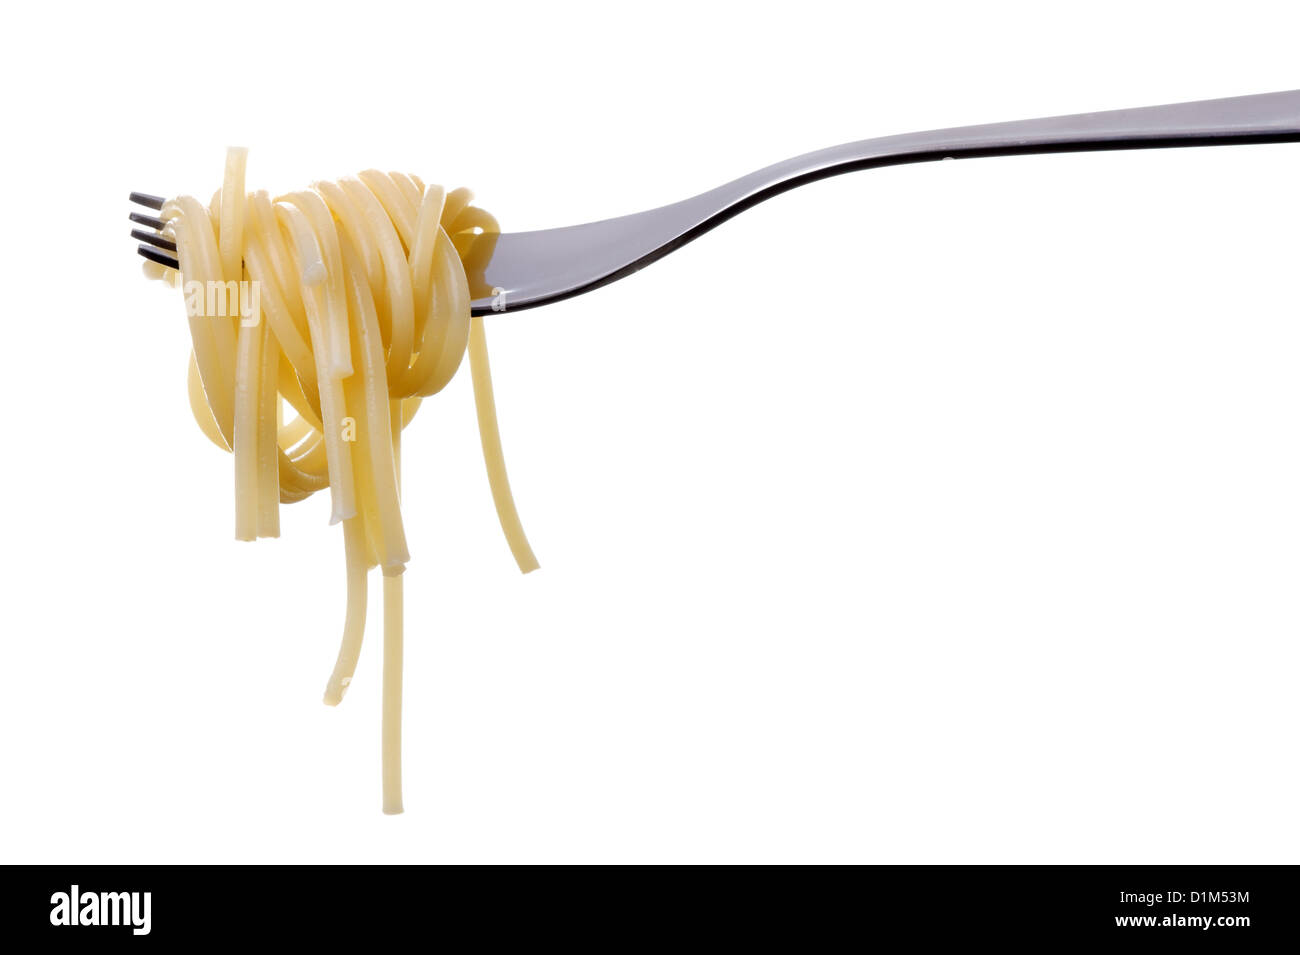 Plaine cuit pâtes spaghetti sur une fourchette contre isolé sur fond blanc Banque D'Images